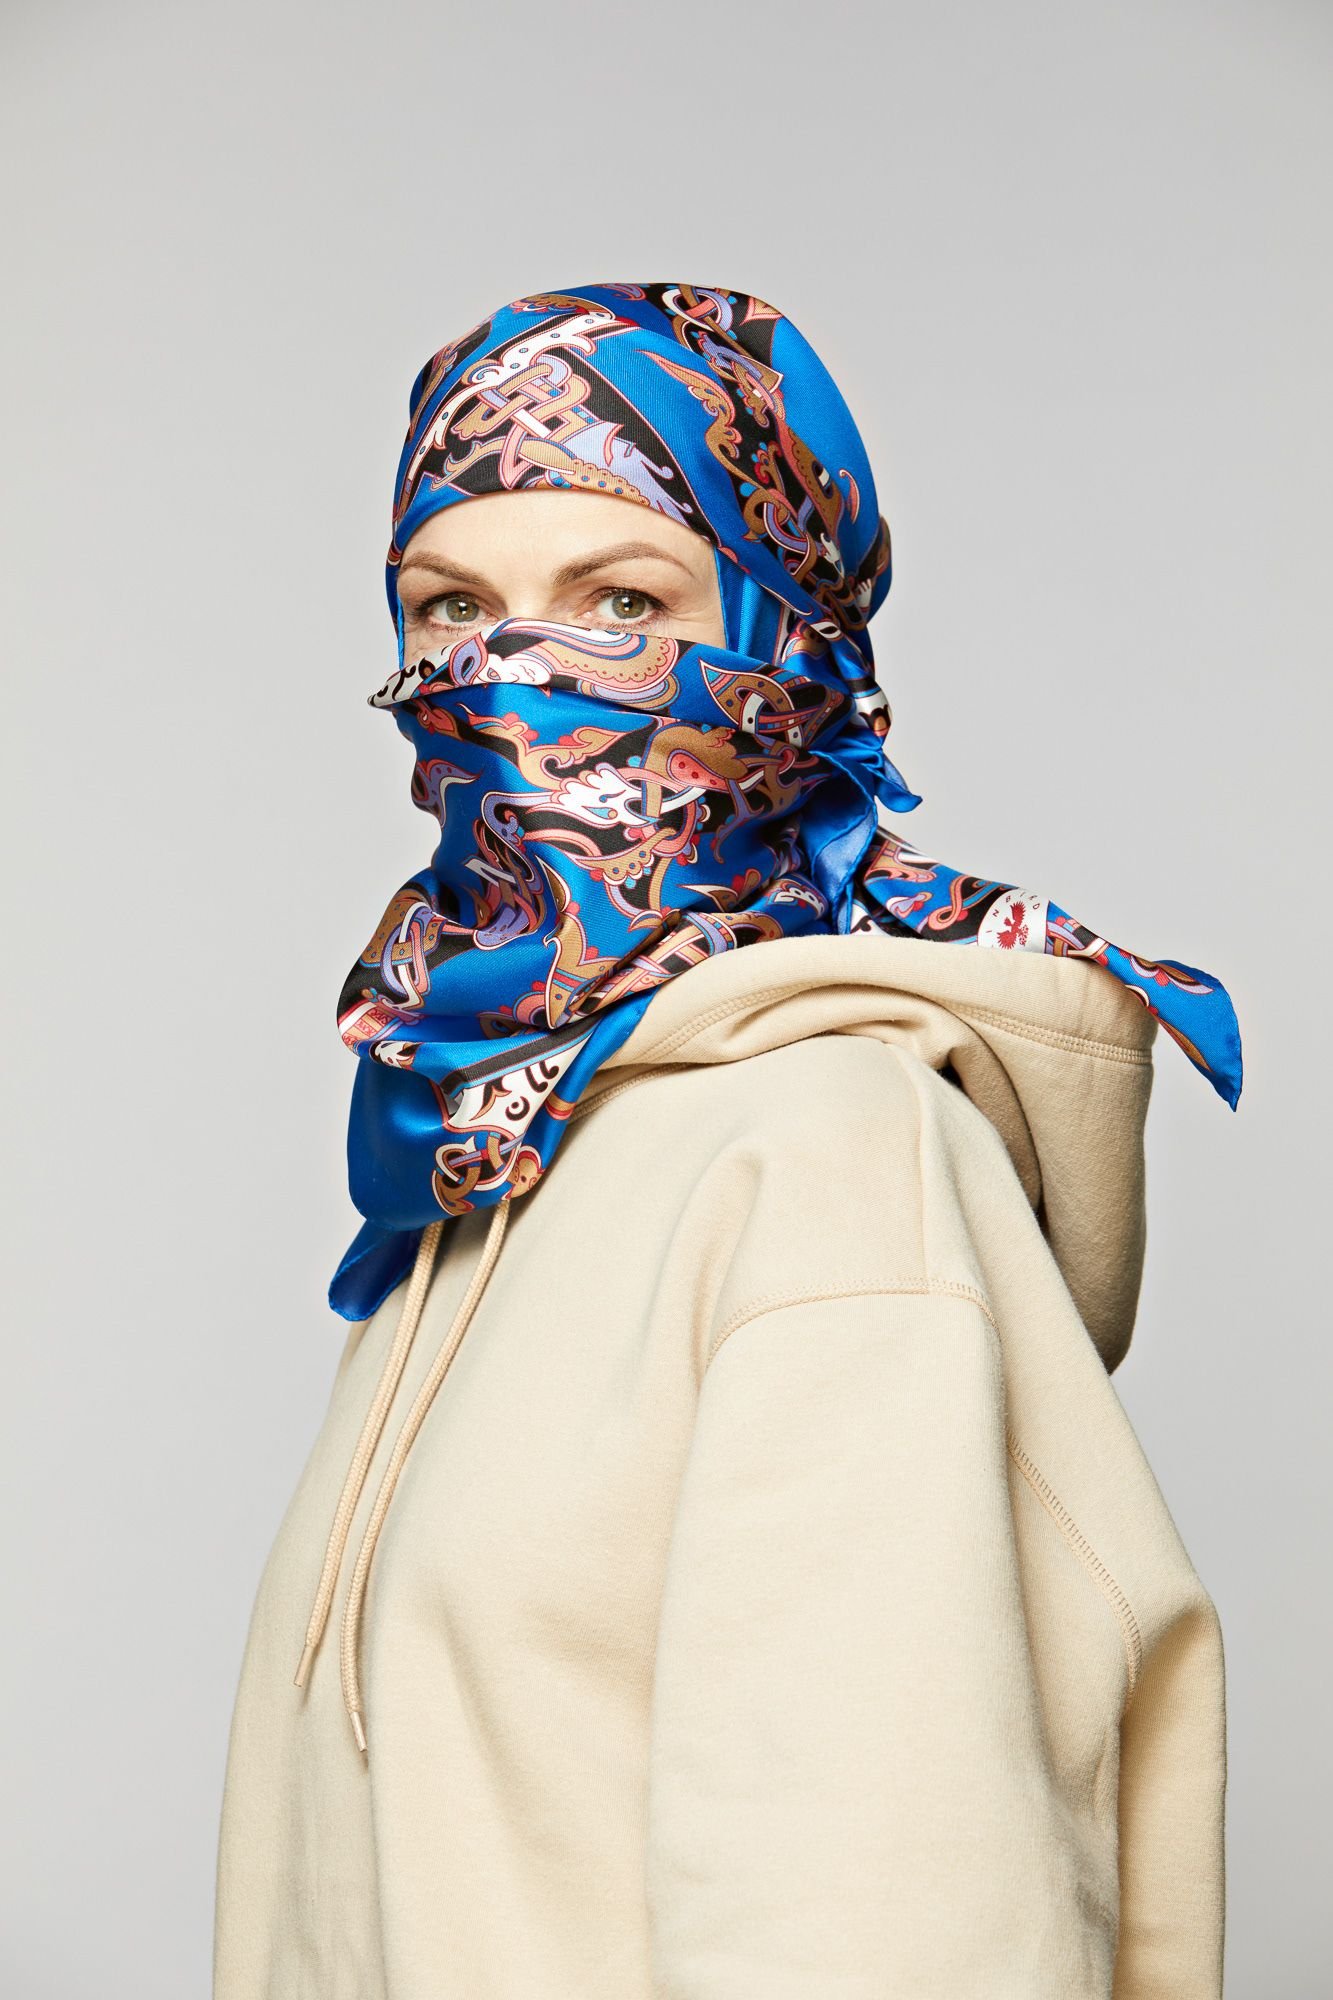 Платок арабка. Арабский платок. Арабский платок женский. Арабка в платке. Арабский платок на голову.